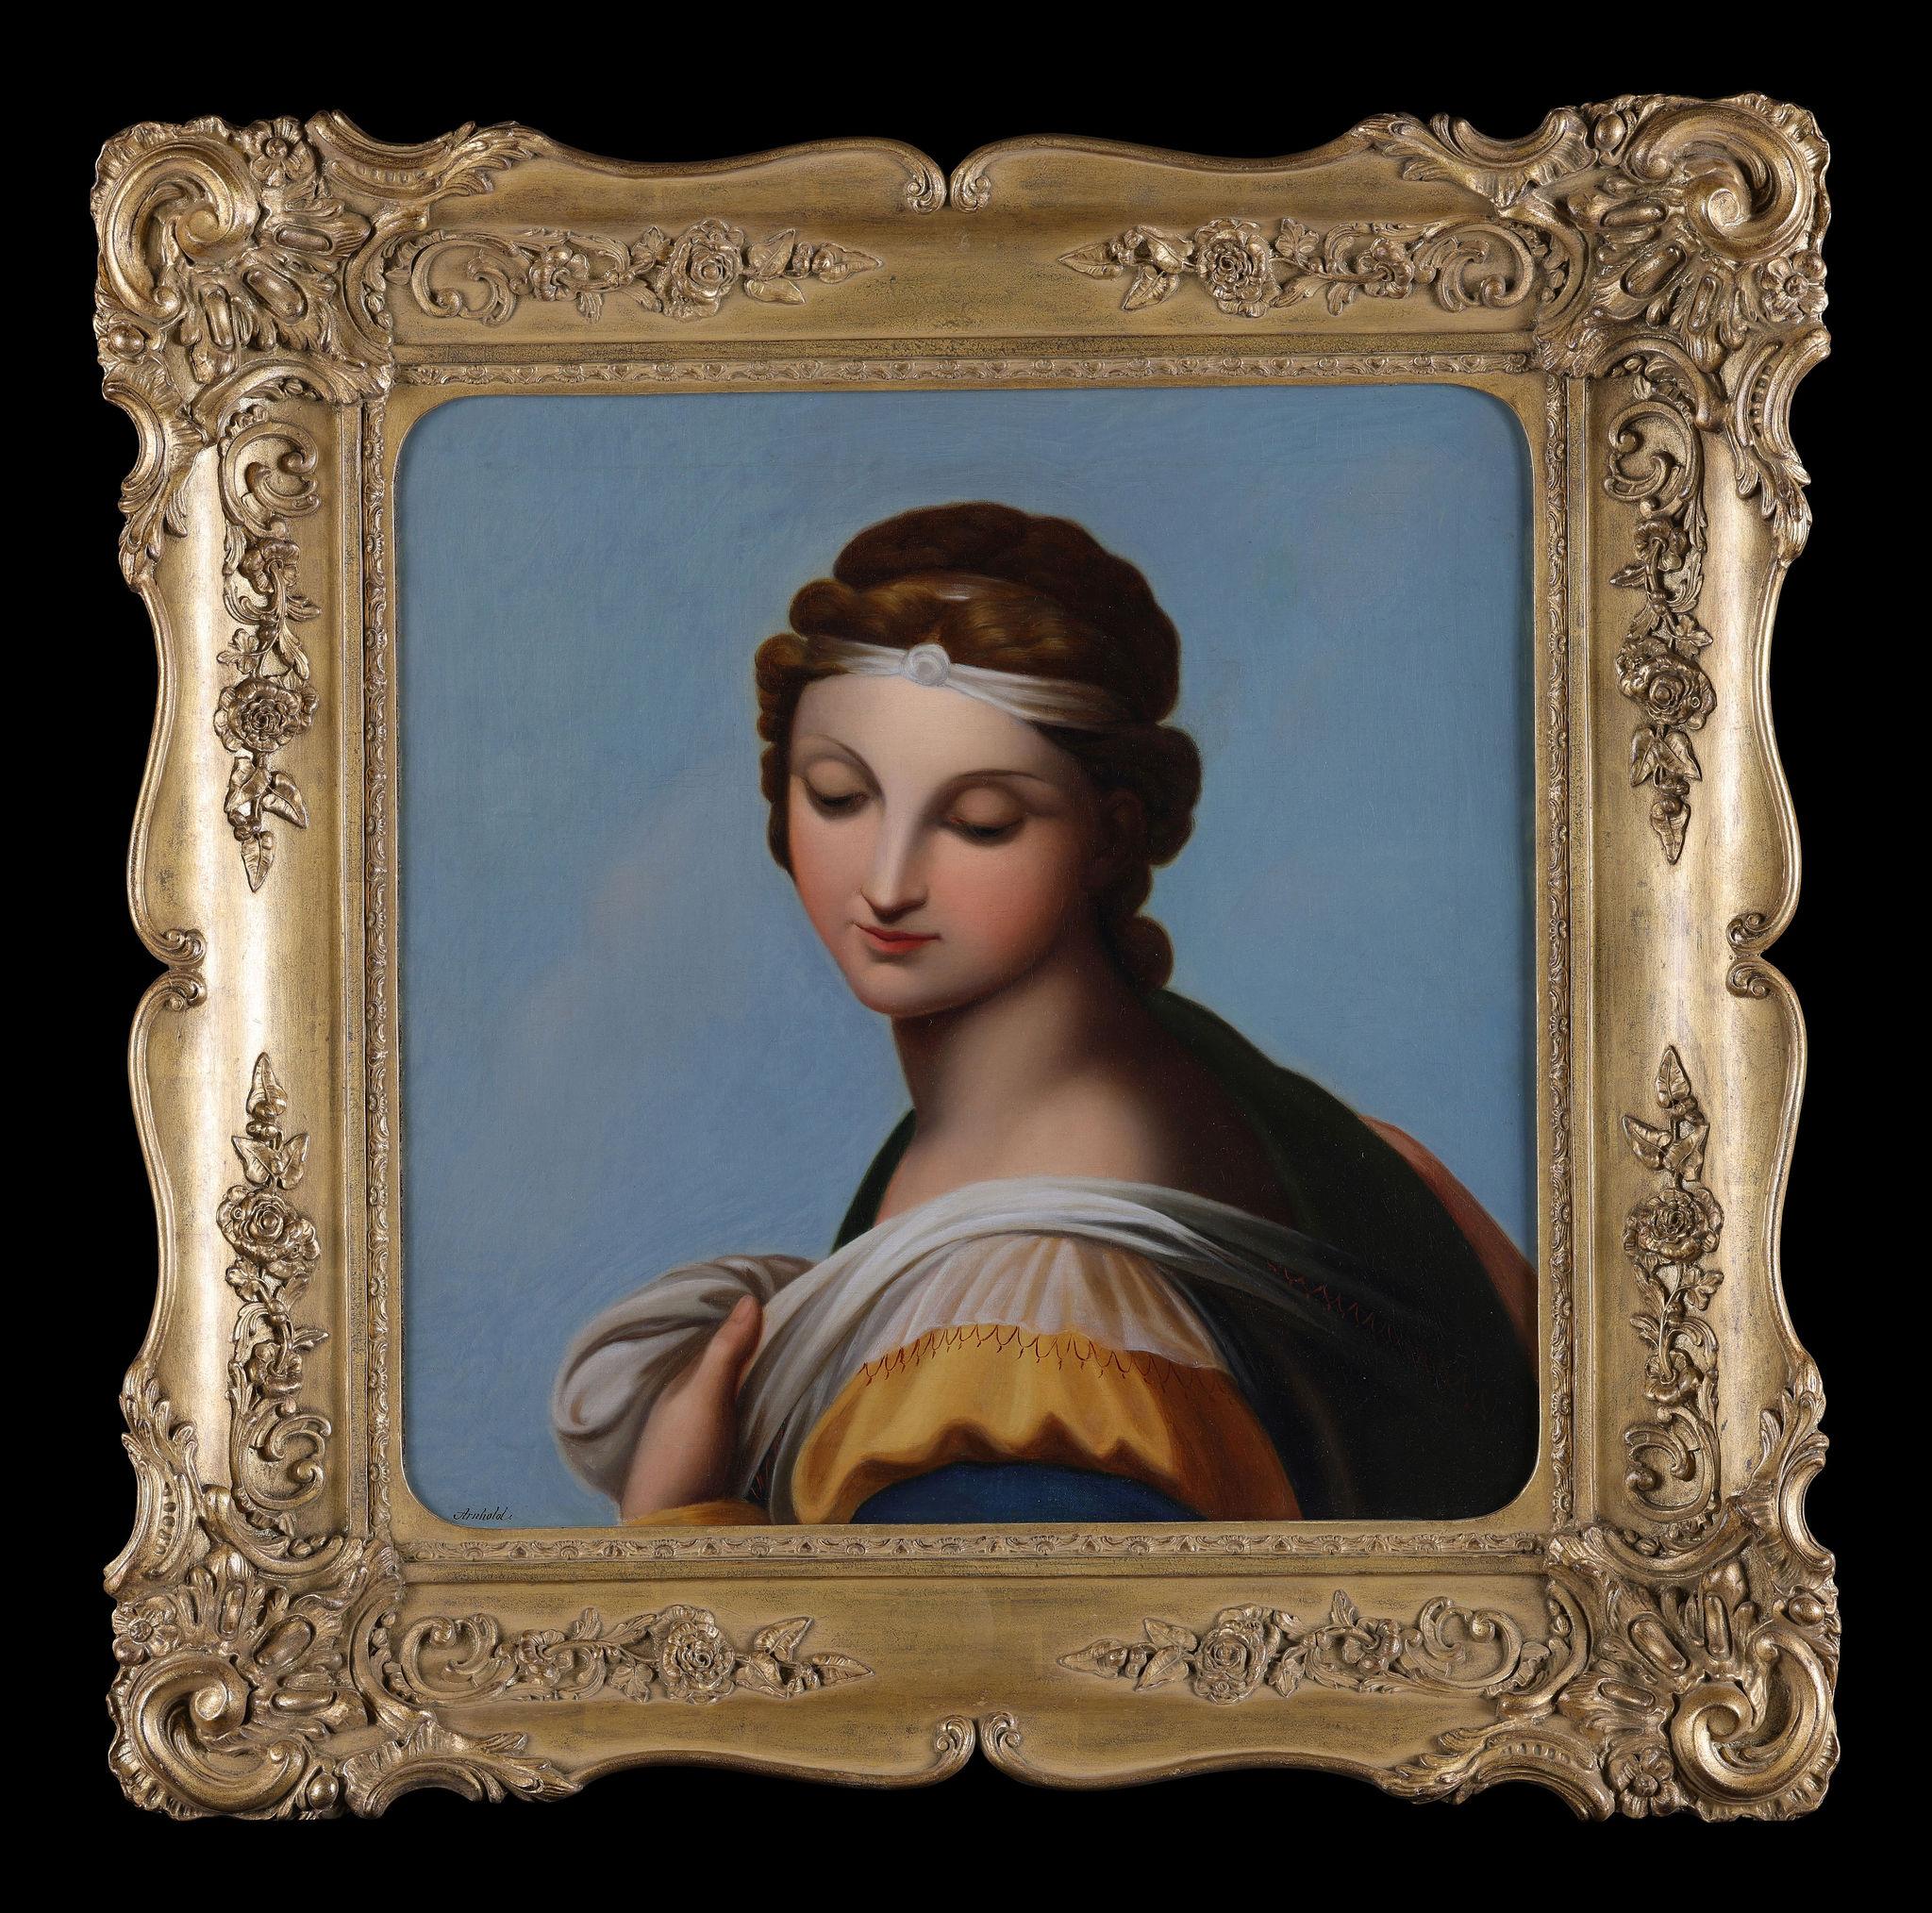 Arnhold Portrait Painting – Eine präraffaelitische Schönheit